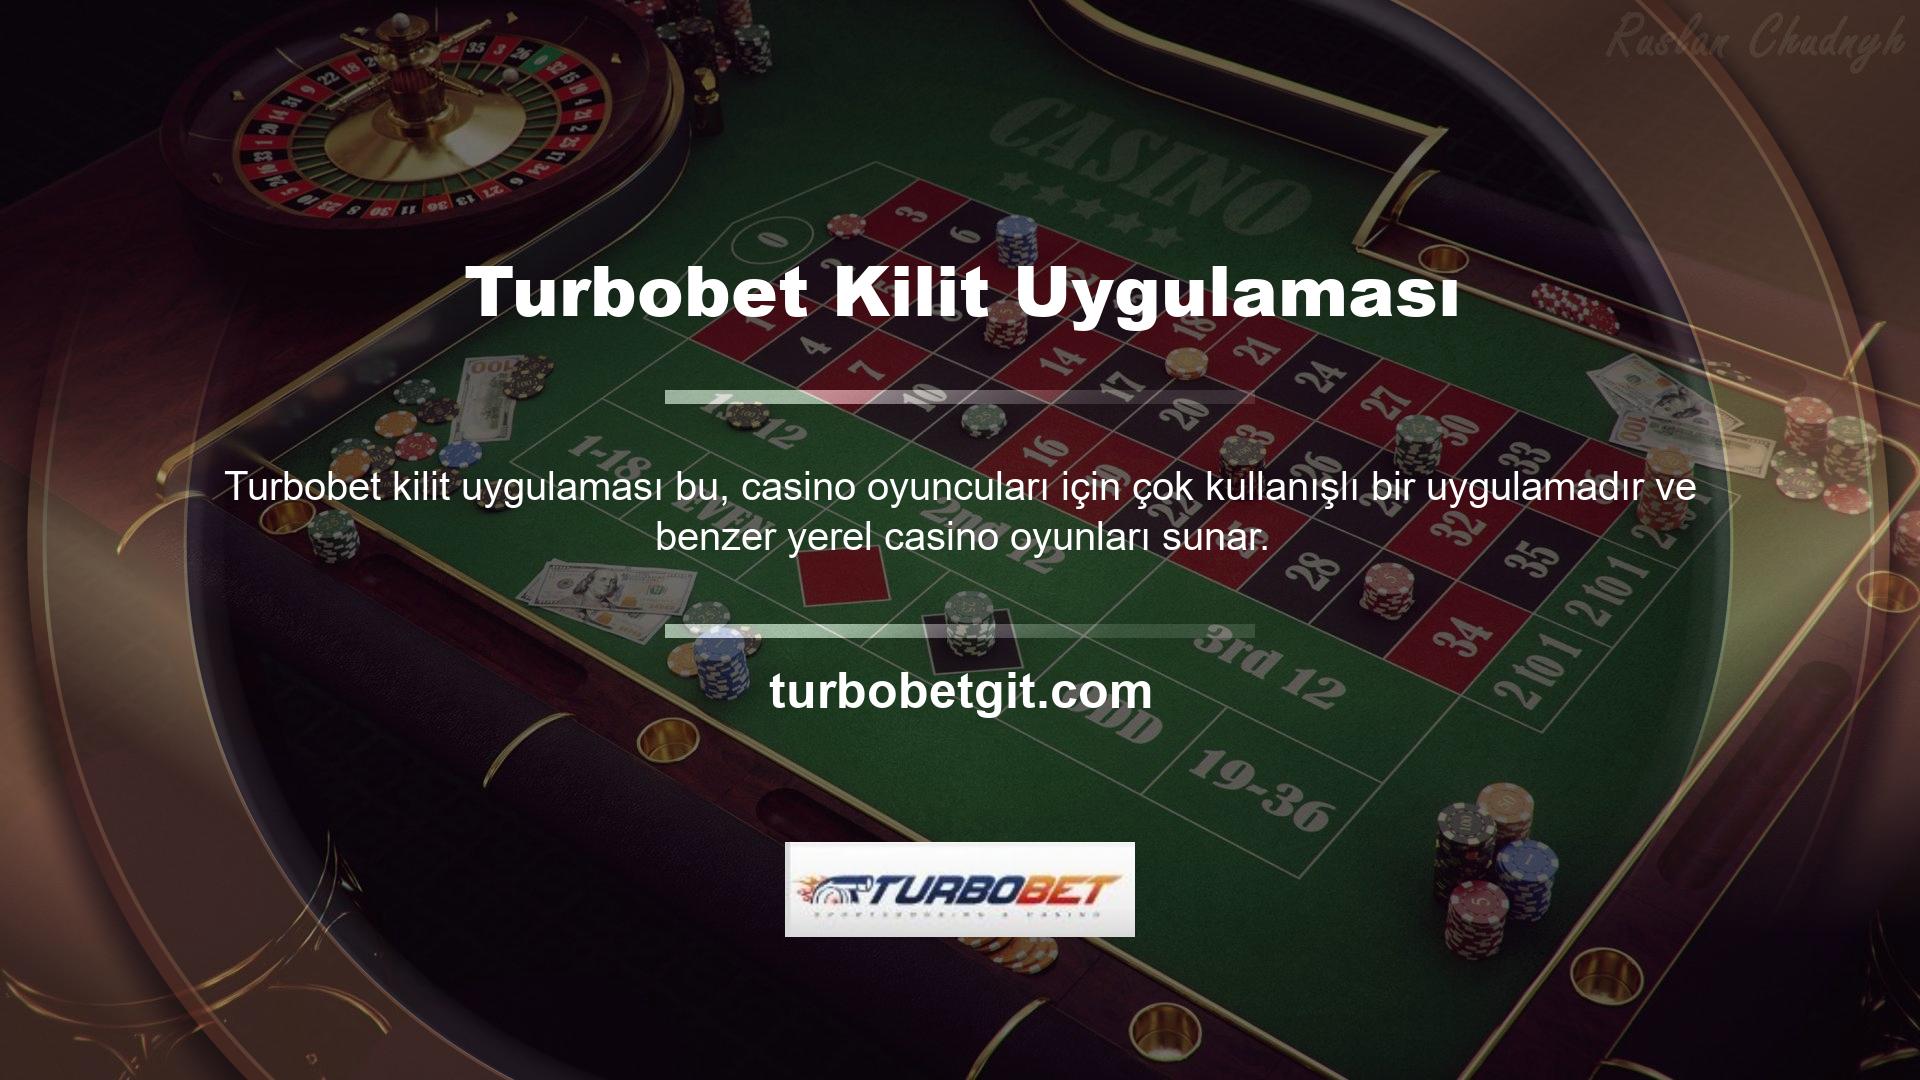 Tüm Turbobet casino ürünleri gibi, Turbobet slot makinesi uygulaması da çok kullanışlı ve iyi geliştirilmiştir